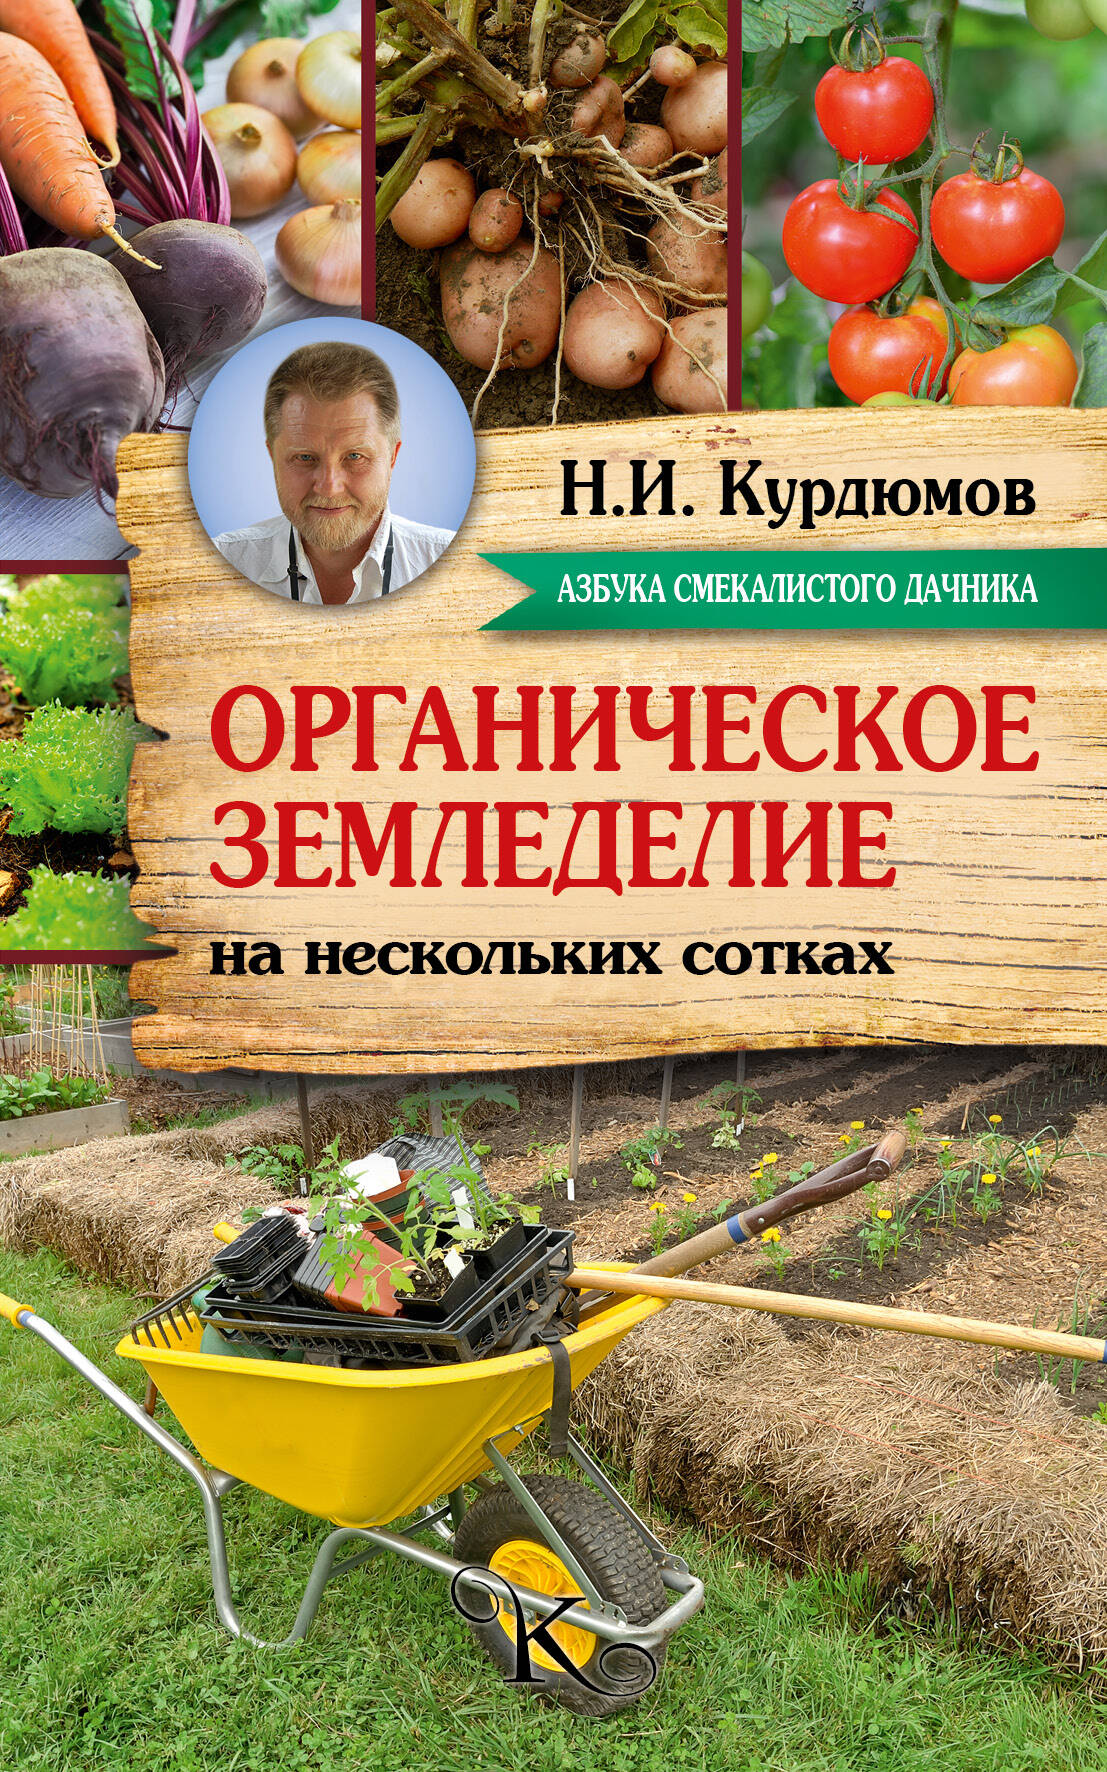 Курдюмов Николай Иванович Органическое земледелие на нескольких сотках - страница 0